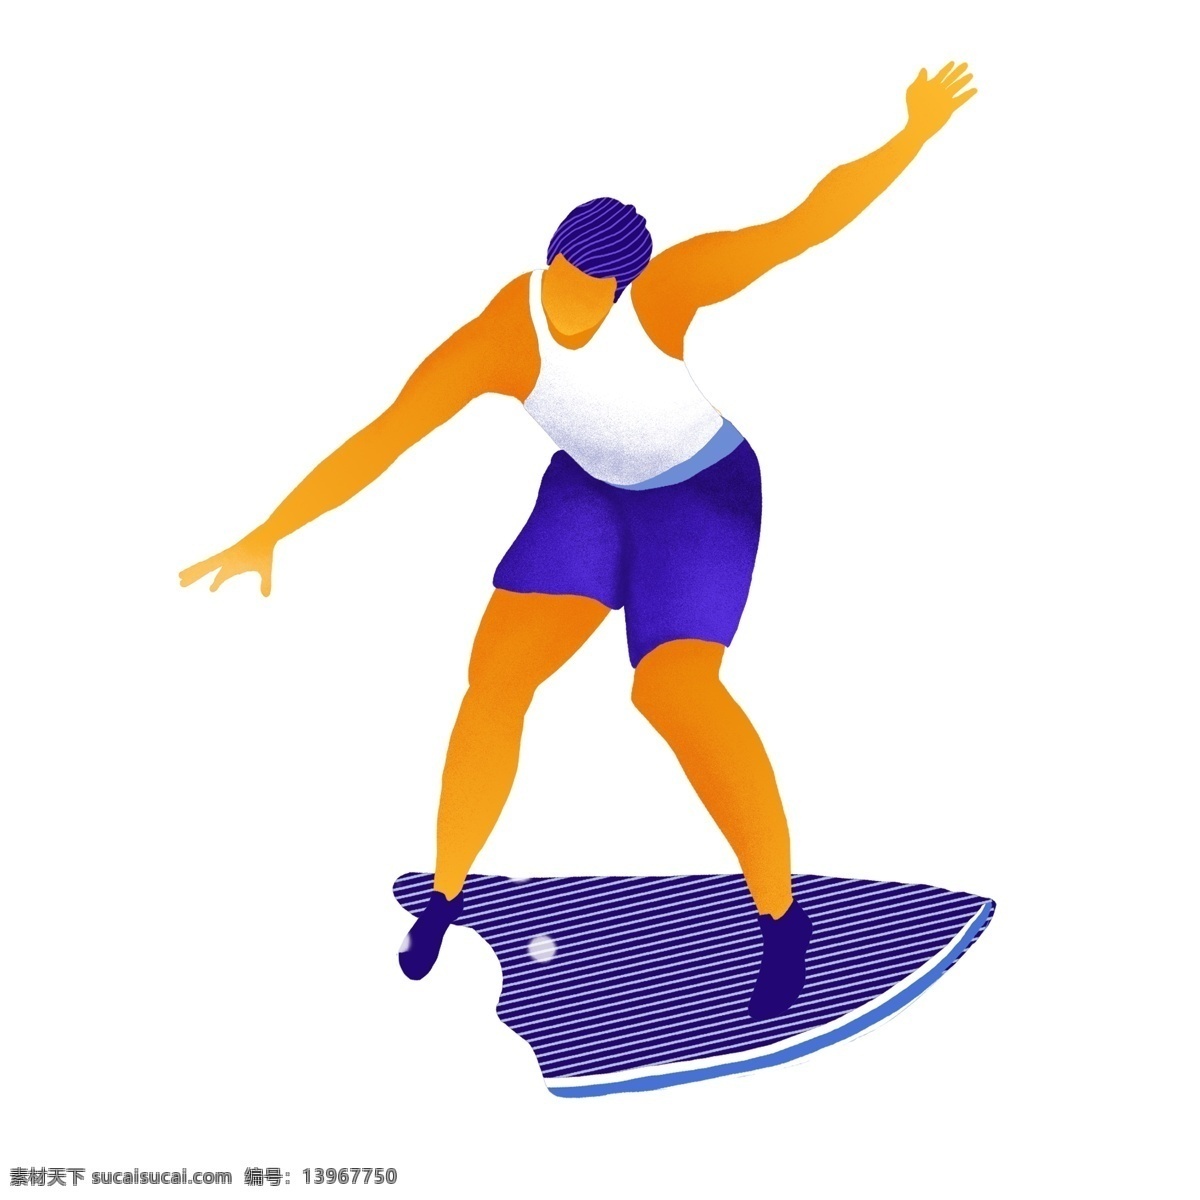 手绘 大海 上 冲浪 男士 运动员 原创 元素 手绘卡通 比赛 健身 原创元素 挑战 度假 休闲运动